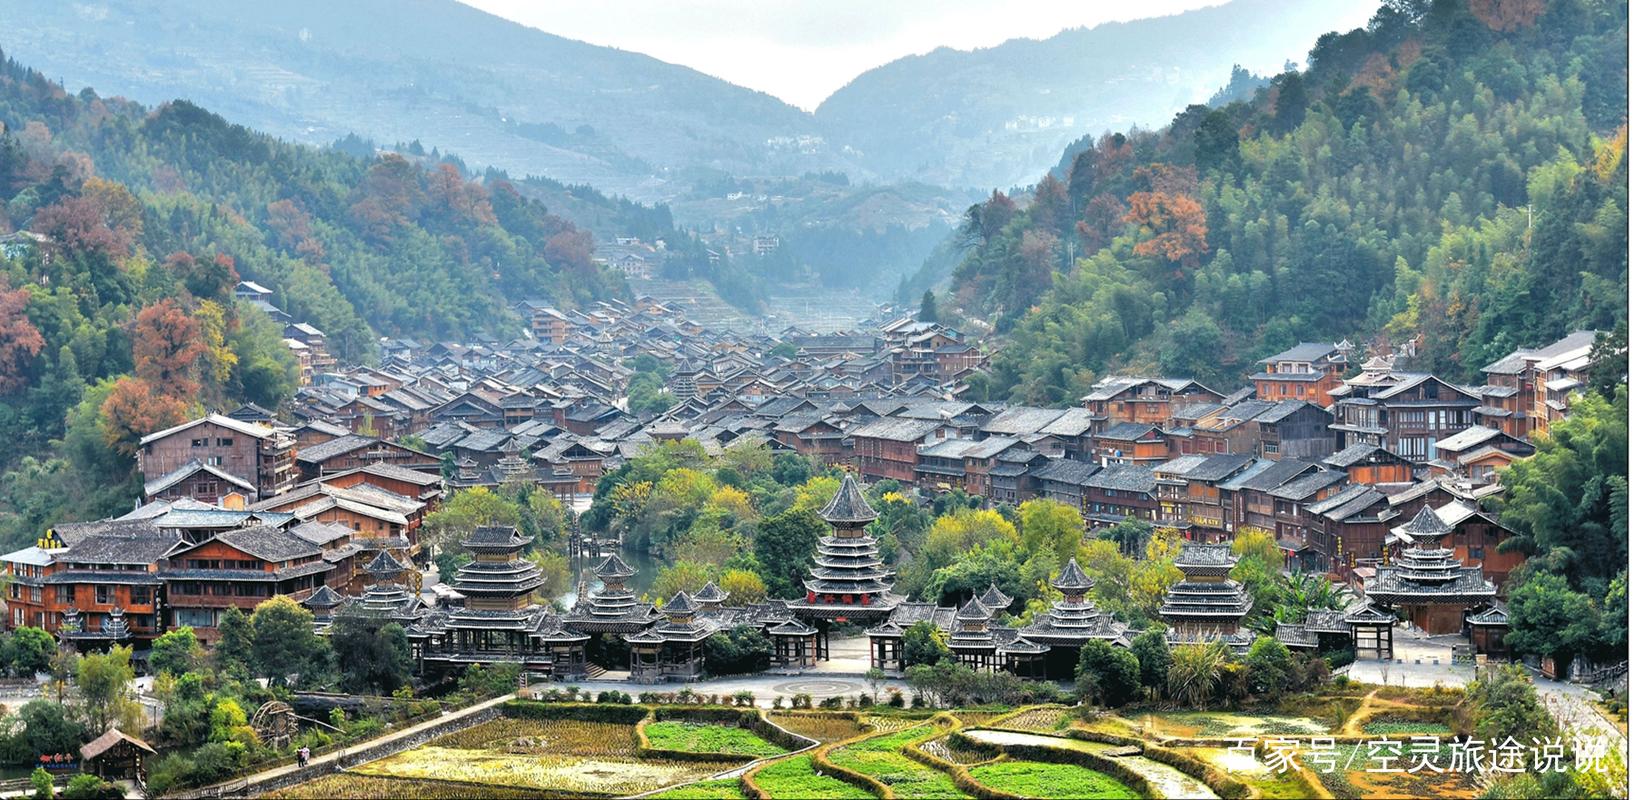 贵州省最具风情的少数民族村寨,肇兴侗寨,来这旅行要注意的事项